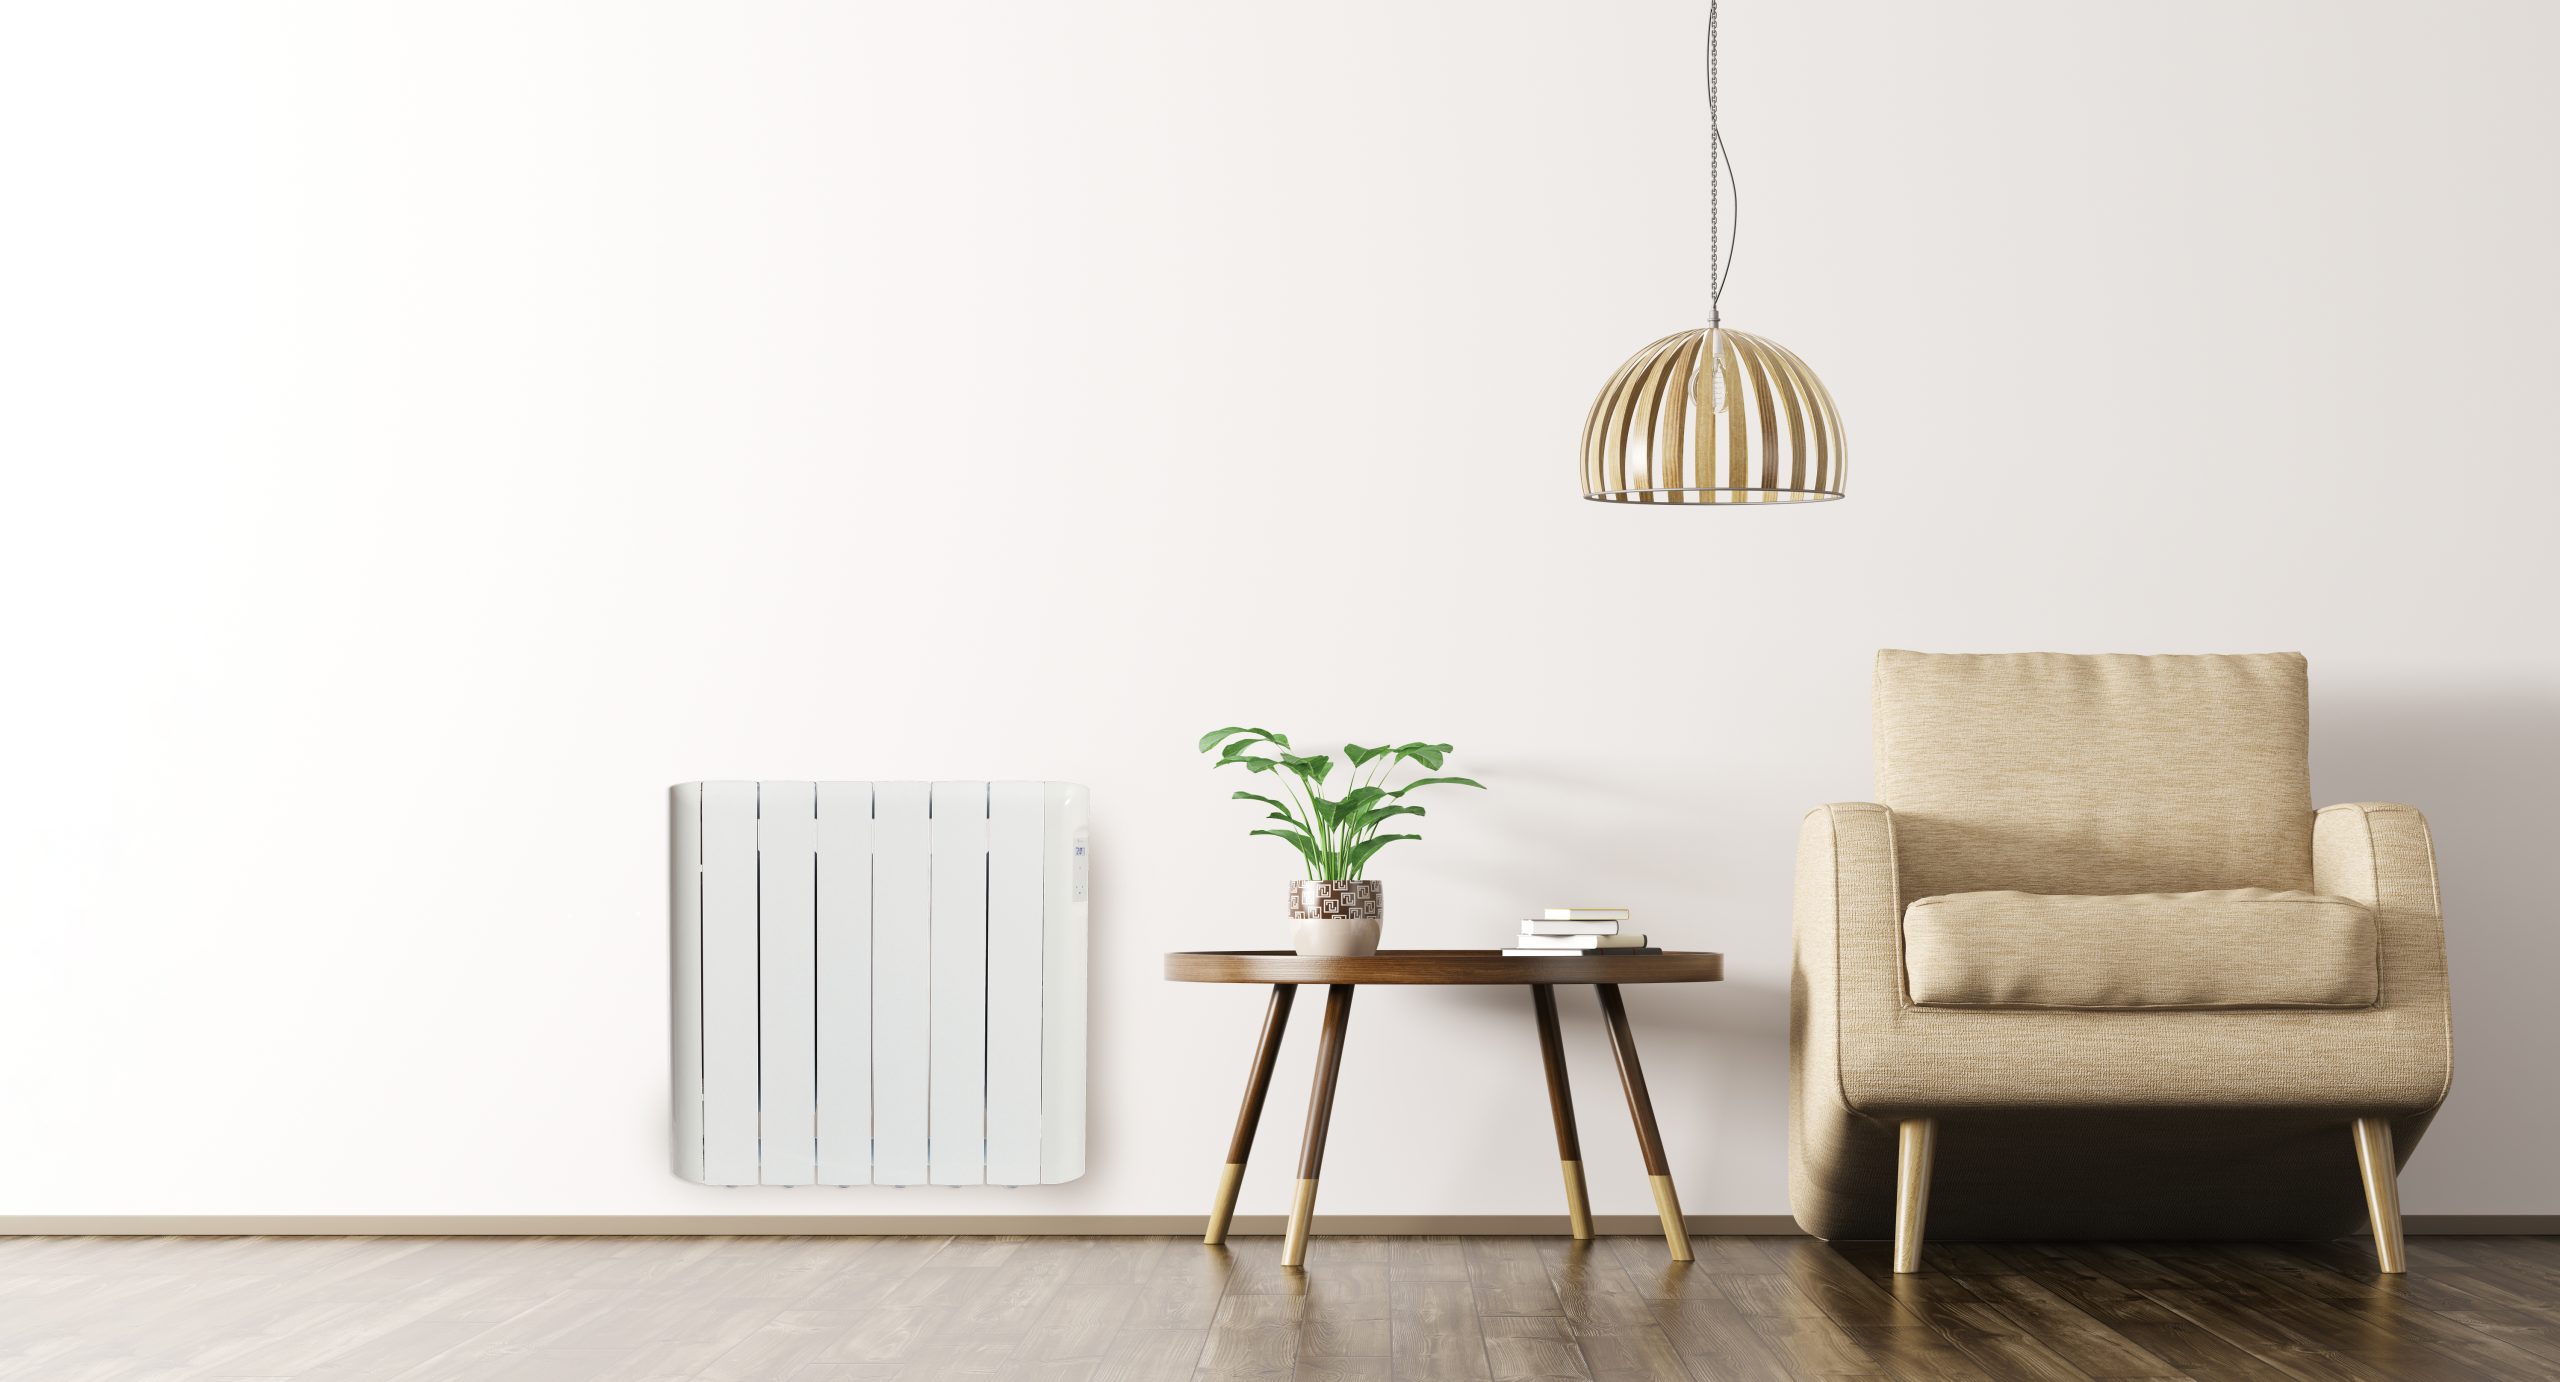 Prepara tu casa con emisores térmicos de bajo consumo - Haverland